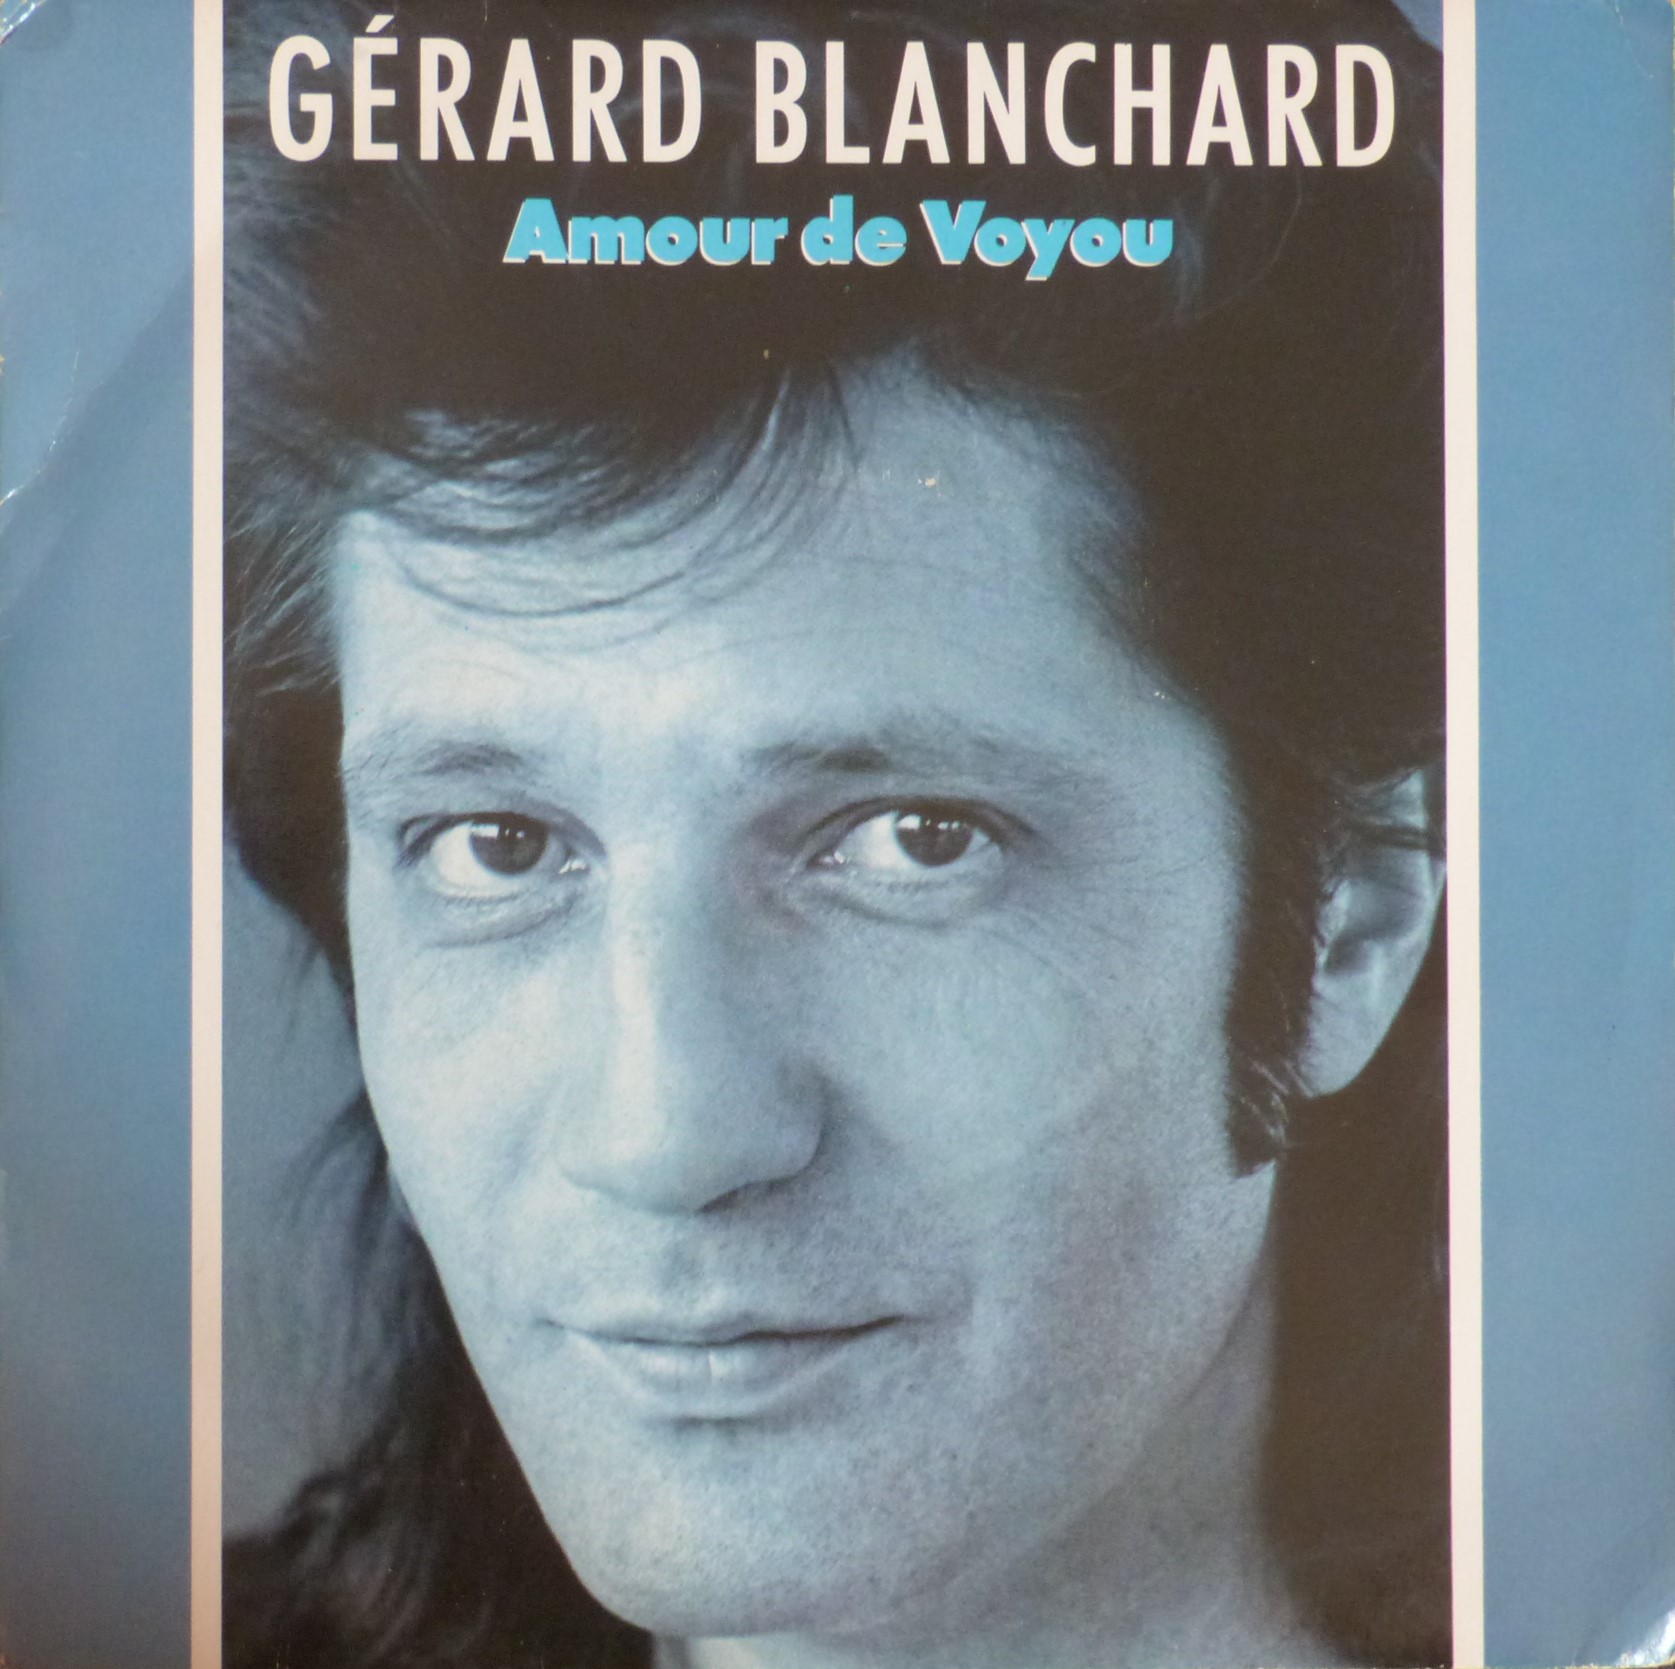 Gérard Blanchard, pochette 45 tours : Son amour de voyou